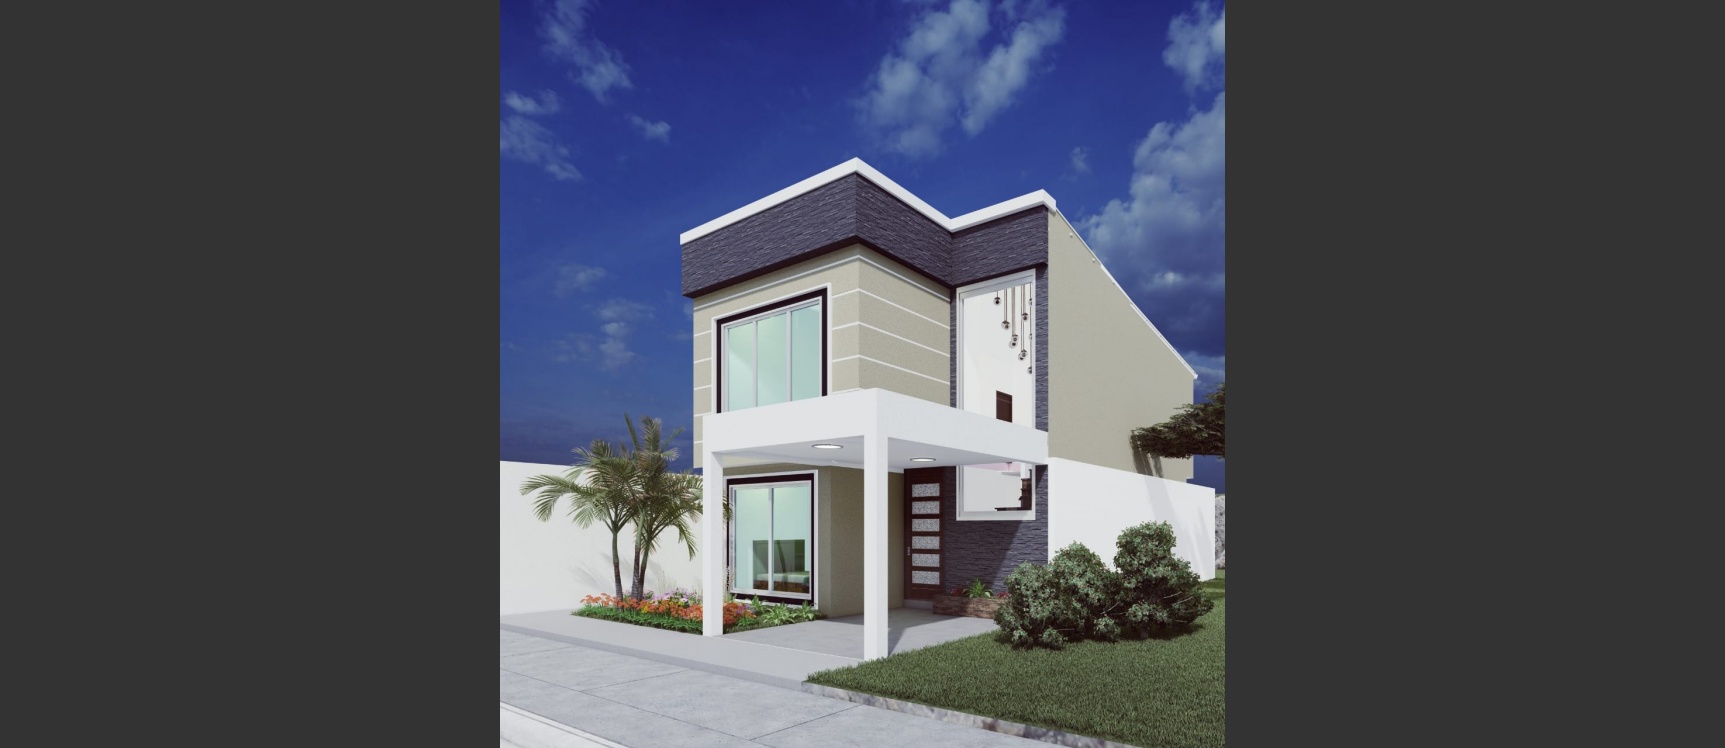 GeoBienes - Proyecto de casa en venta ubicado en Urbanización San Antonio, Modelo Genevieve - Plusvalia Guayaquil Casas de venta y alquiler Inmobiliaria Ecuador